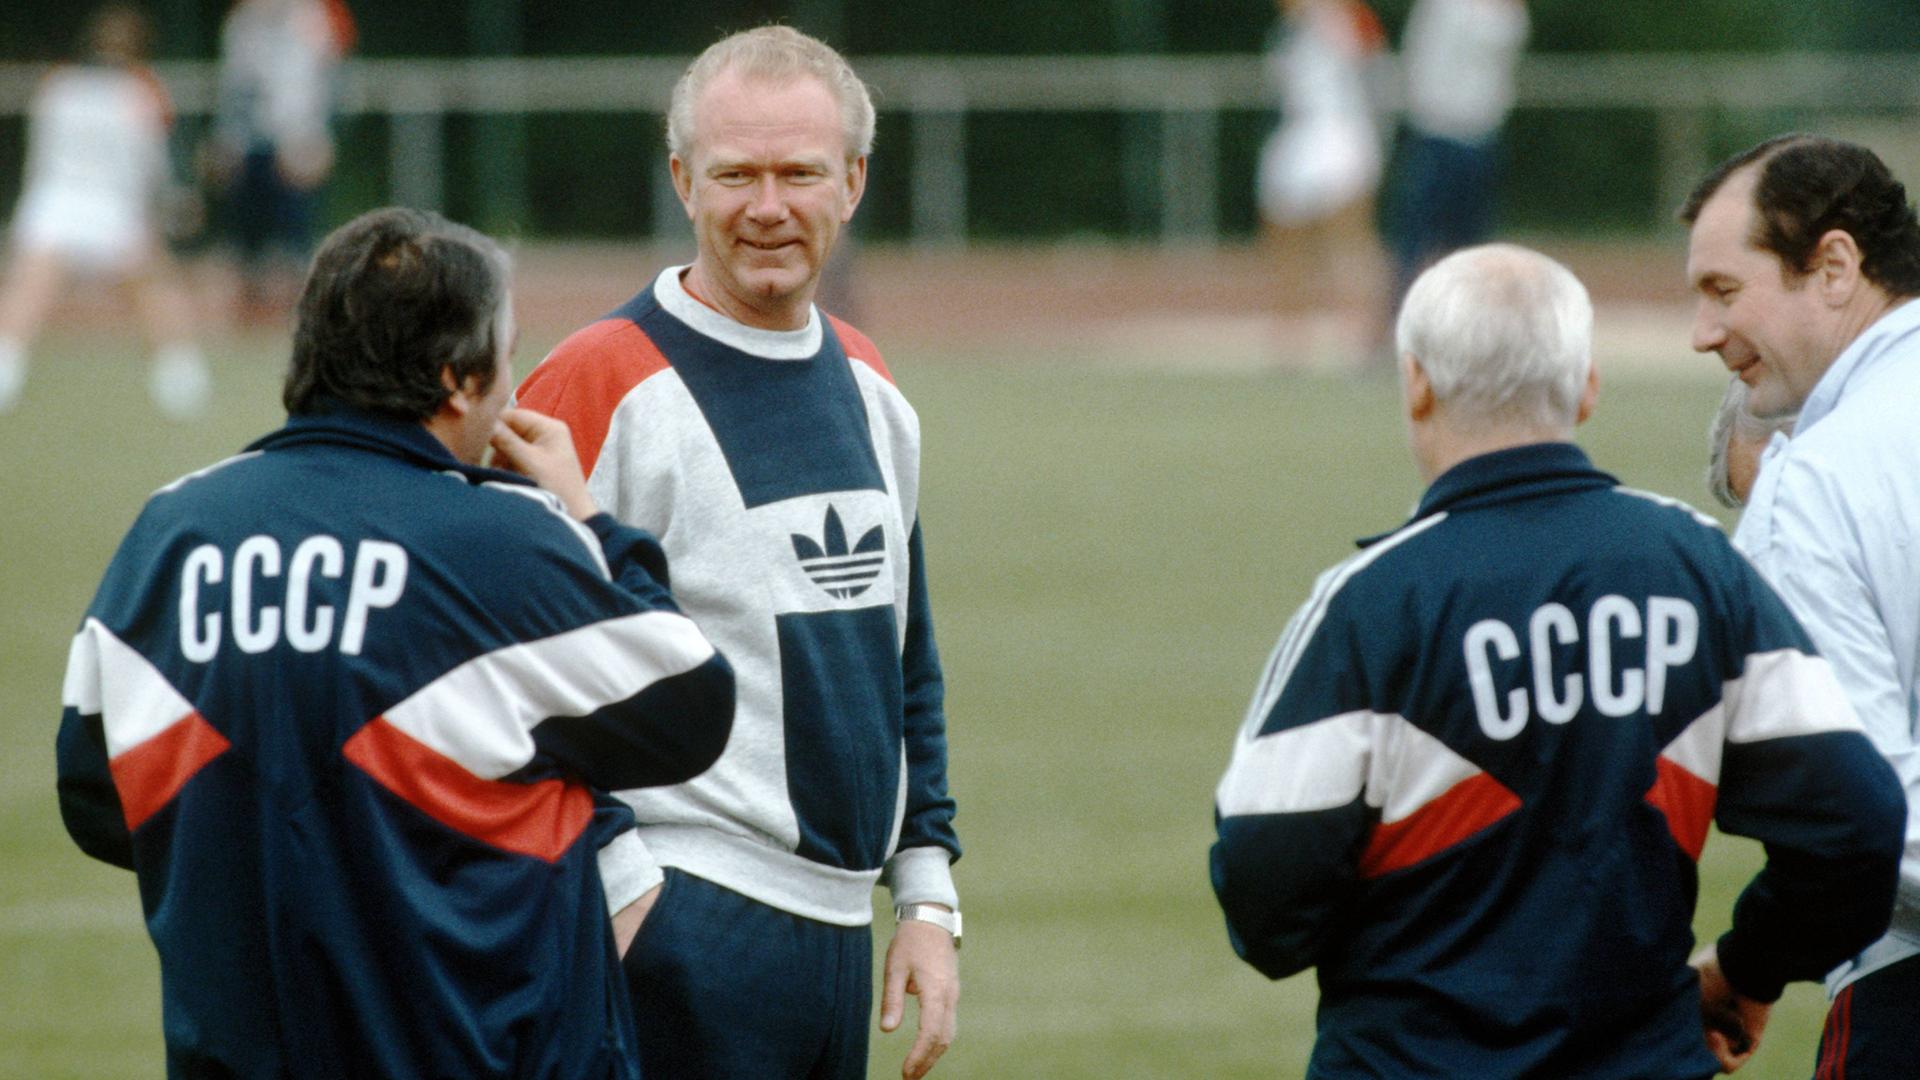 Trainer Walerij Lobanowski (2. von links) mit seinem UdSSR-Team beim Training während der Fußball-Europameisterschaft 1988 in Deutschland, hier in Hannover